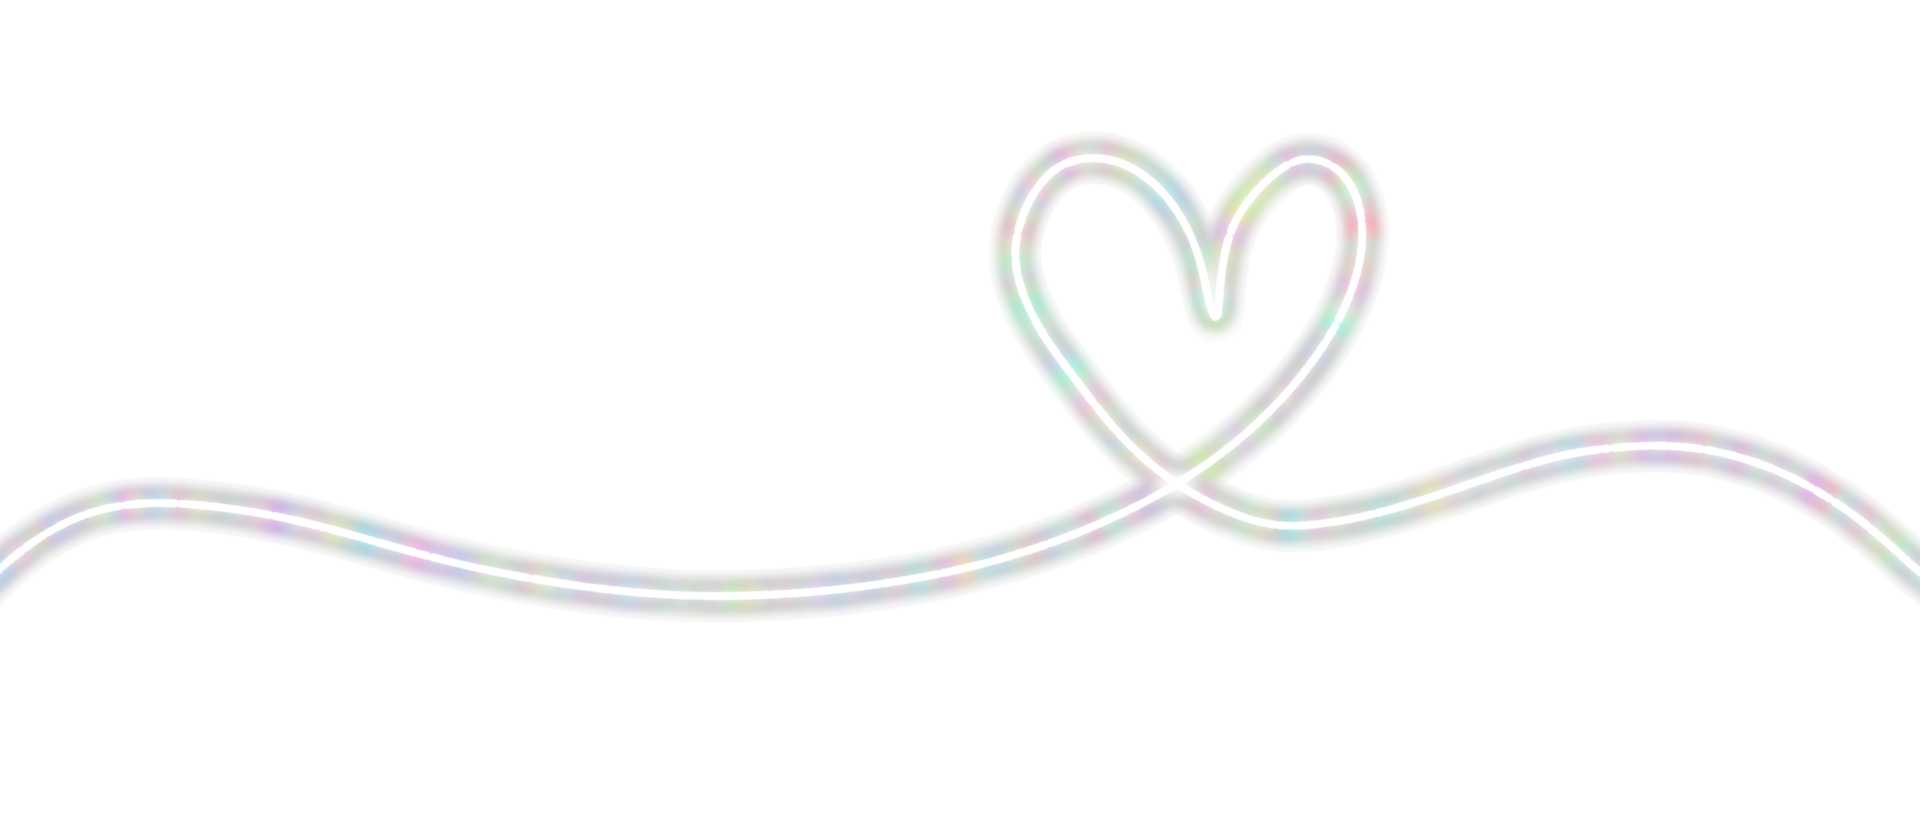 corazón. símbolo de amor abstracto. ilustración de dibujo de línea continua. banner de fondo del día de san valentín png